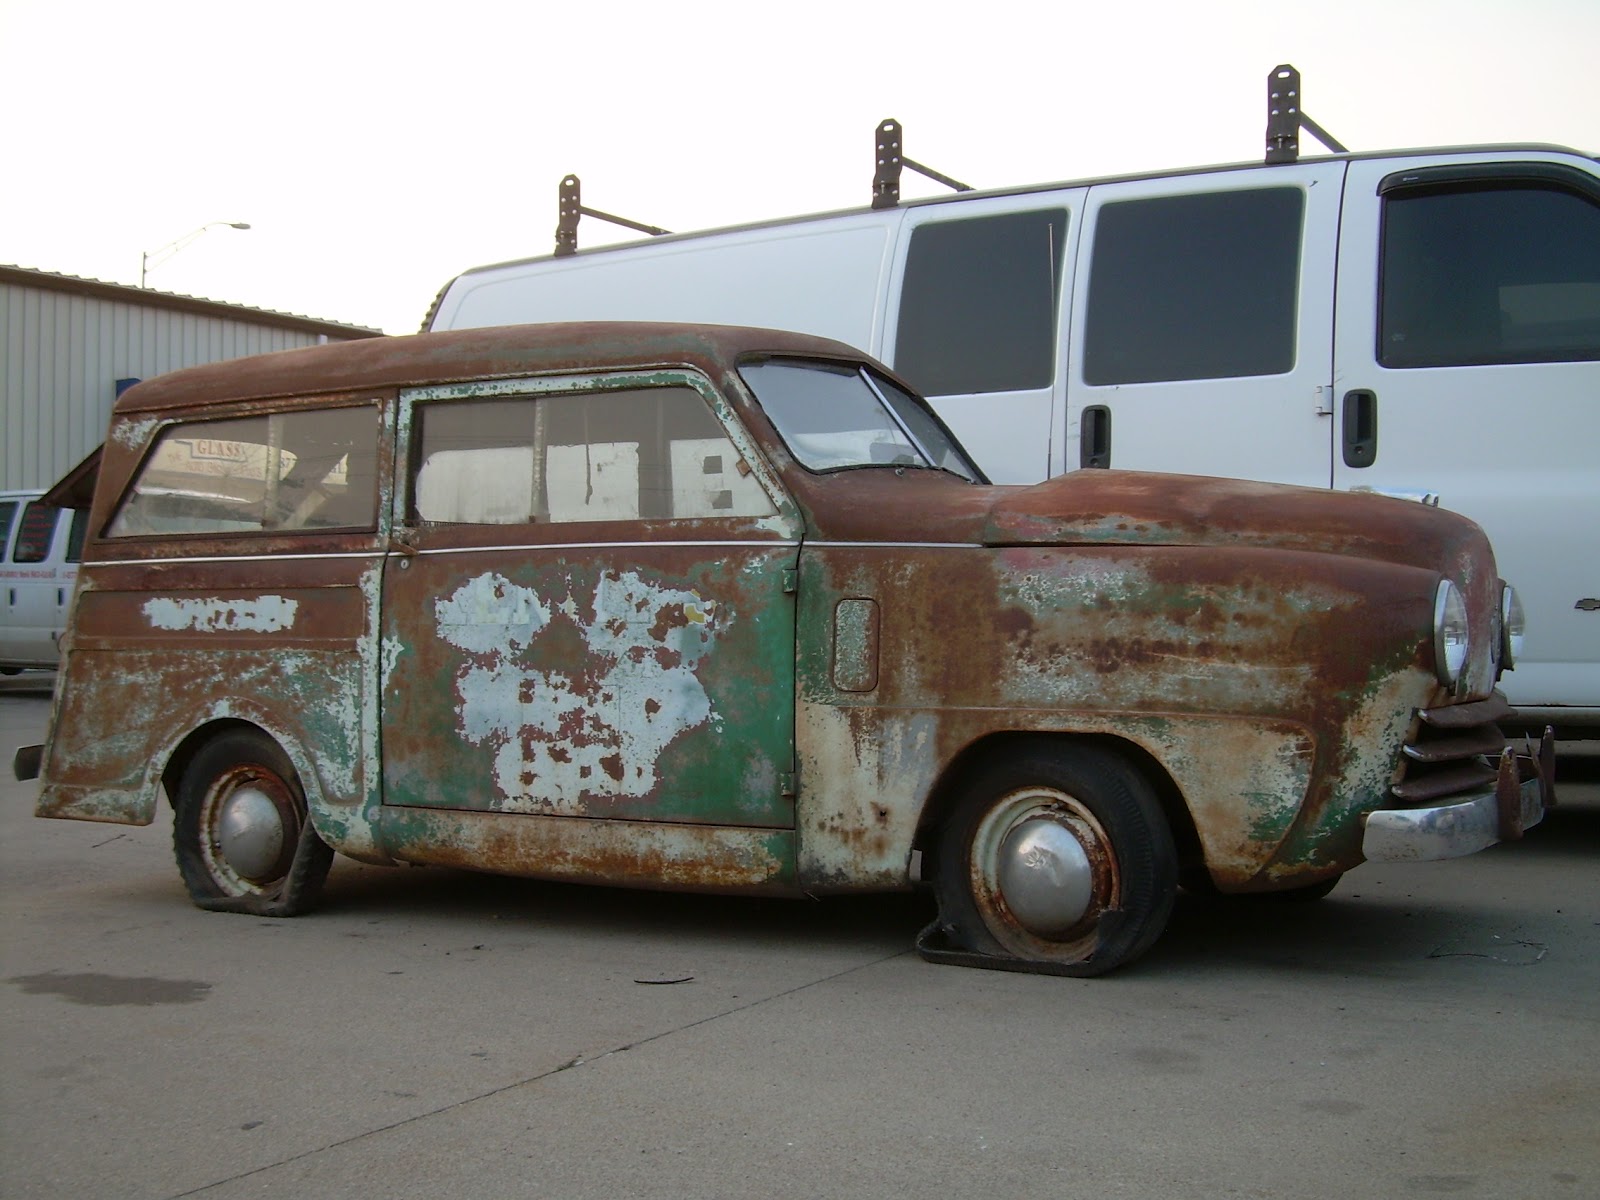 Old Parked Cars Nebraska: 1949 Crosley station wagon